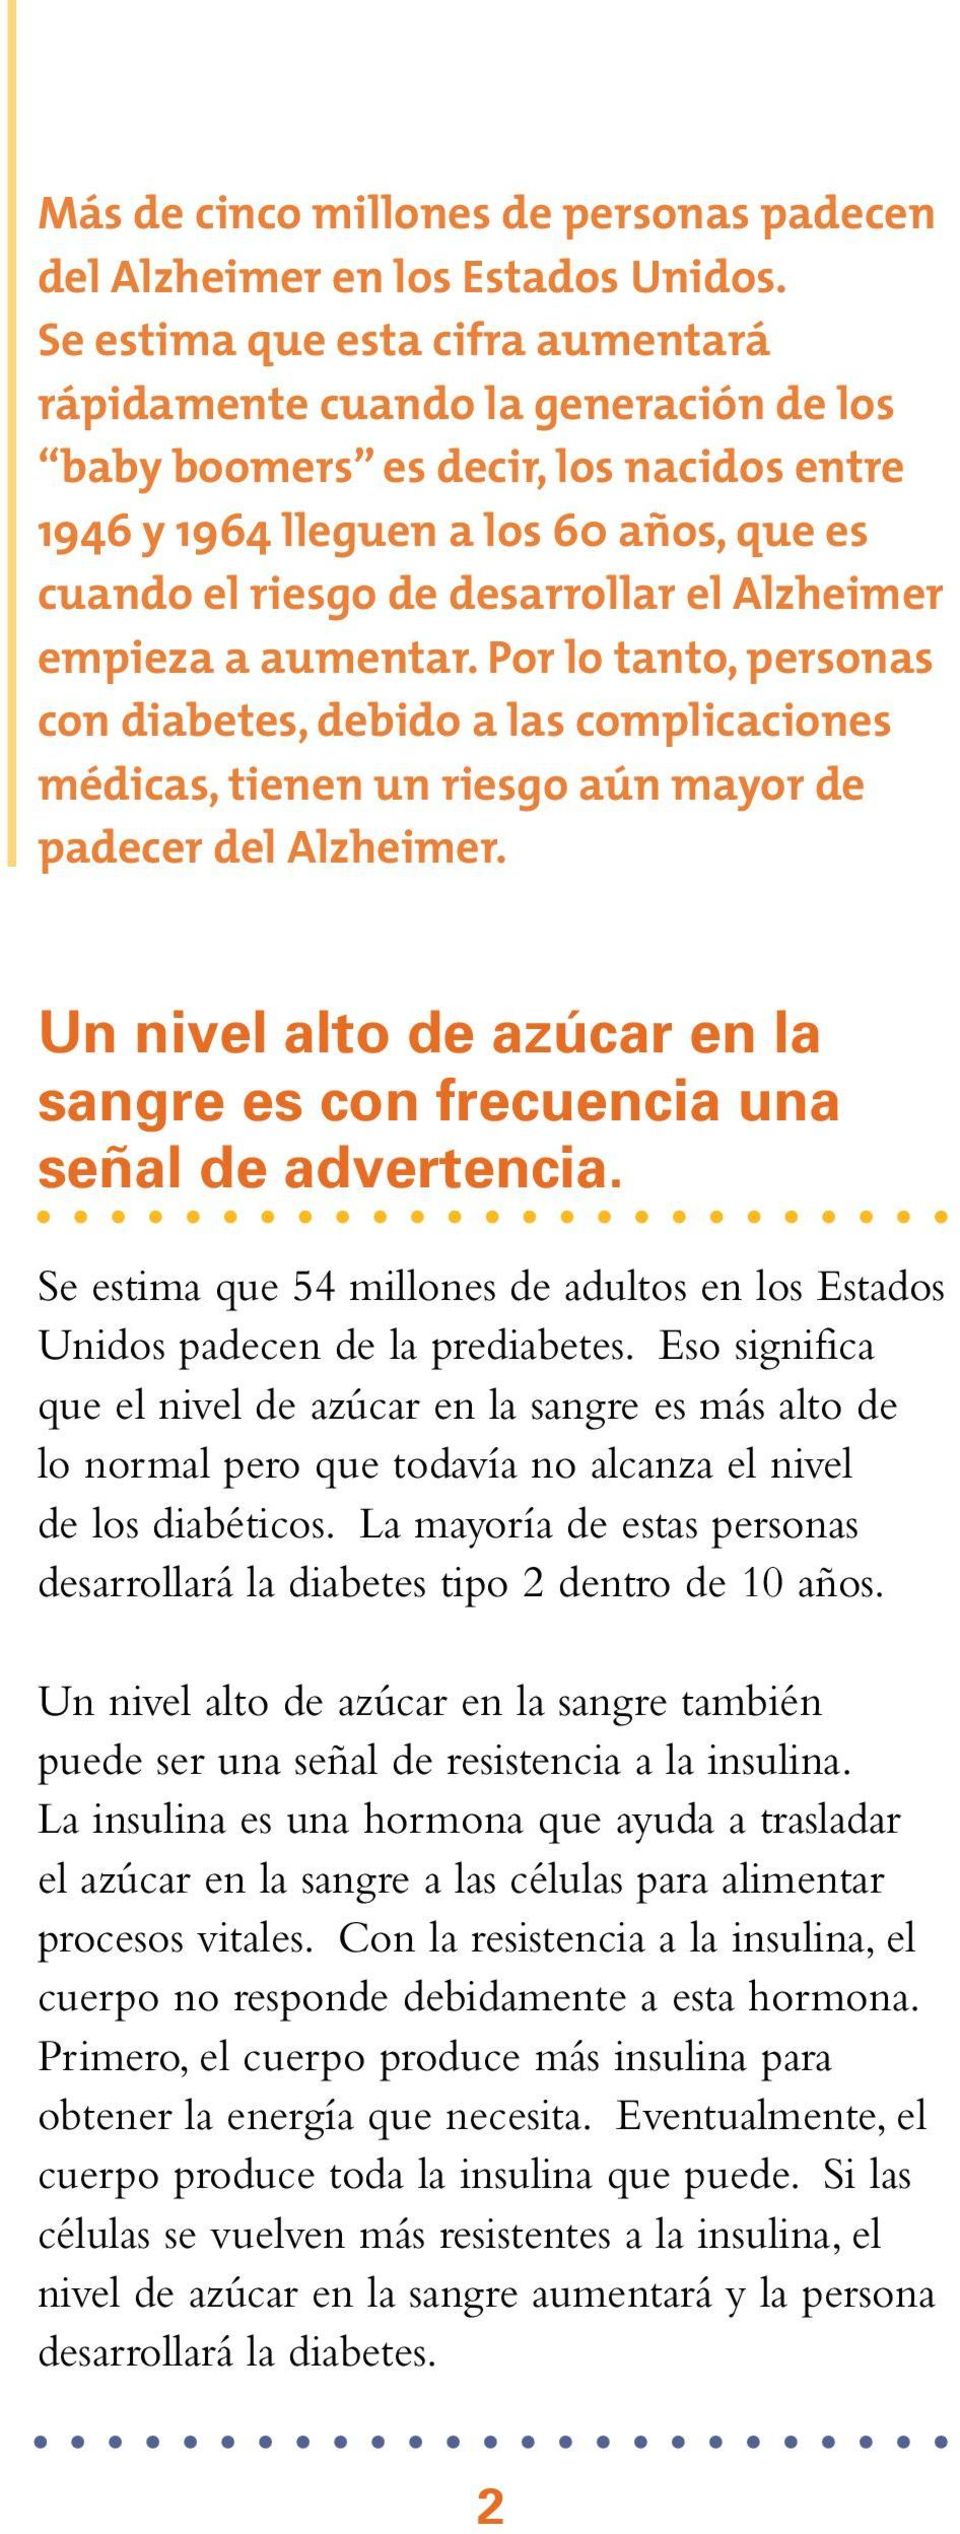 Alzheimer empieza a aumentar. Por lo tanto, personas con diabetes, debido a las complicaciones médicas, tienen un riesgo aún mayor de padecer del Alzheimer.